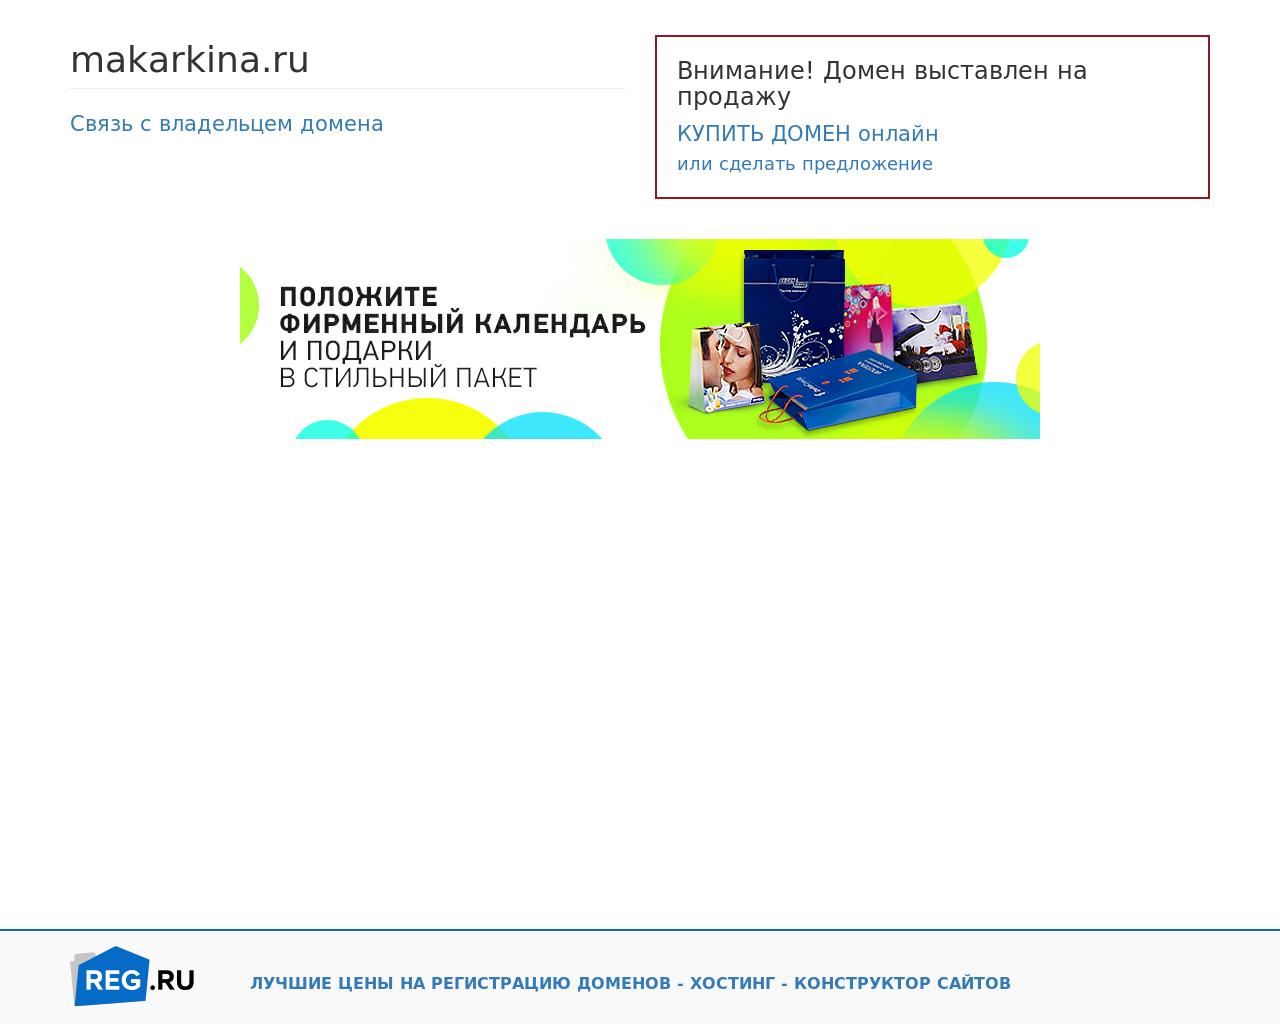 Изображение сайта makarkina.ru в разрешении 1280x1024